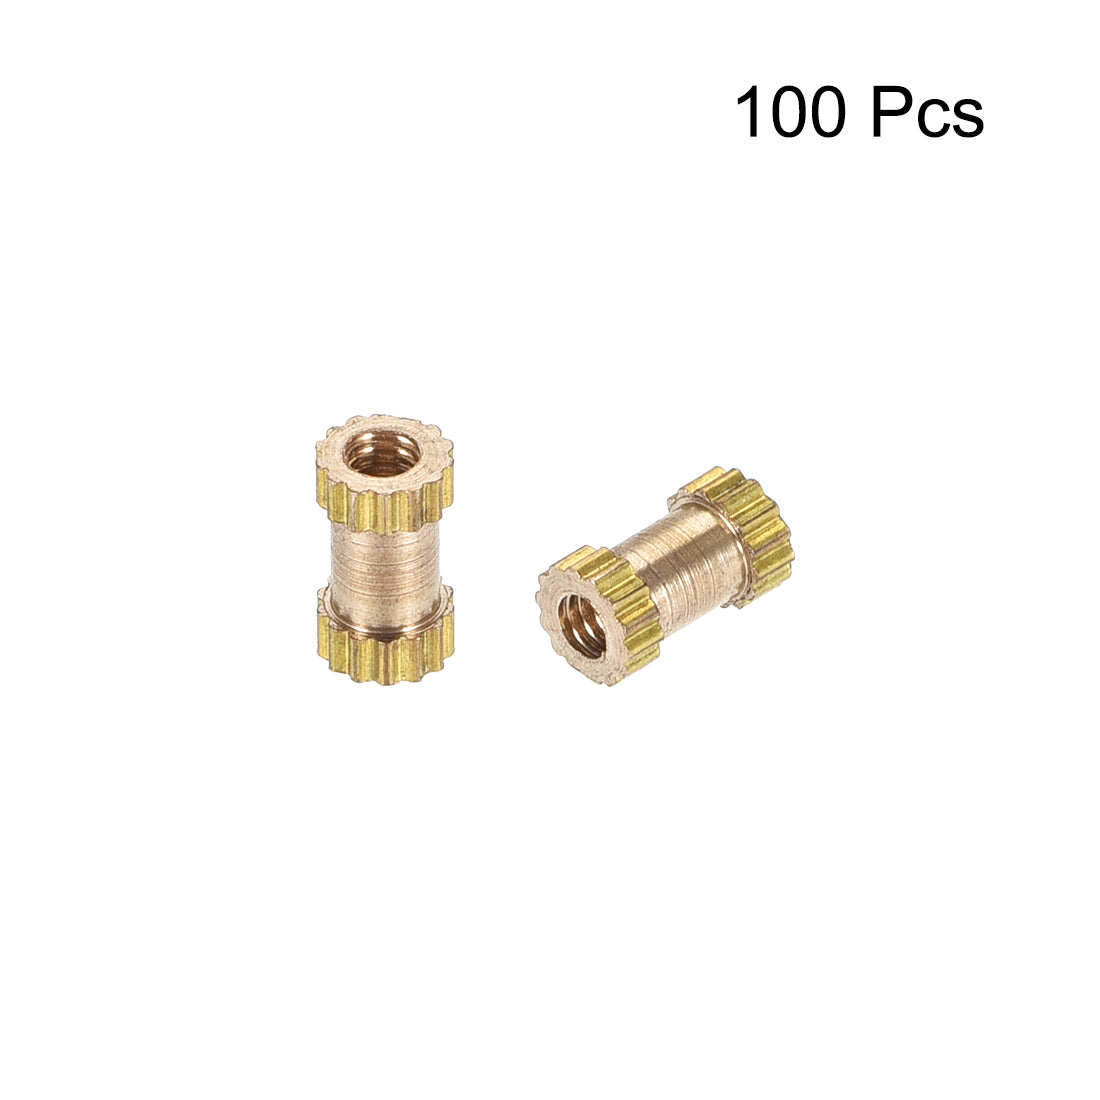 uxcell Uxcell Knurled Insert Nuts, M2 x 6mm(L) x 3.5mm(OD) Female Thread Brass Embedment Assortment Kit, 100 Pcs